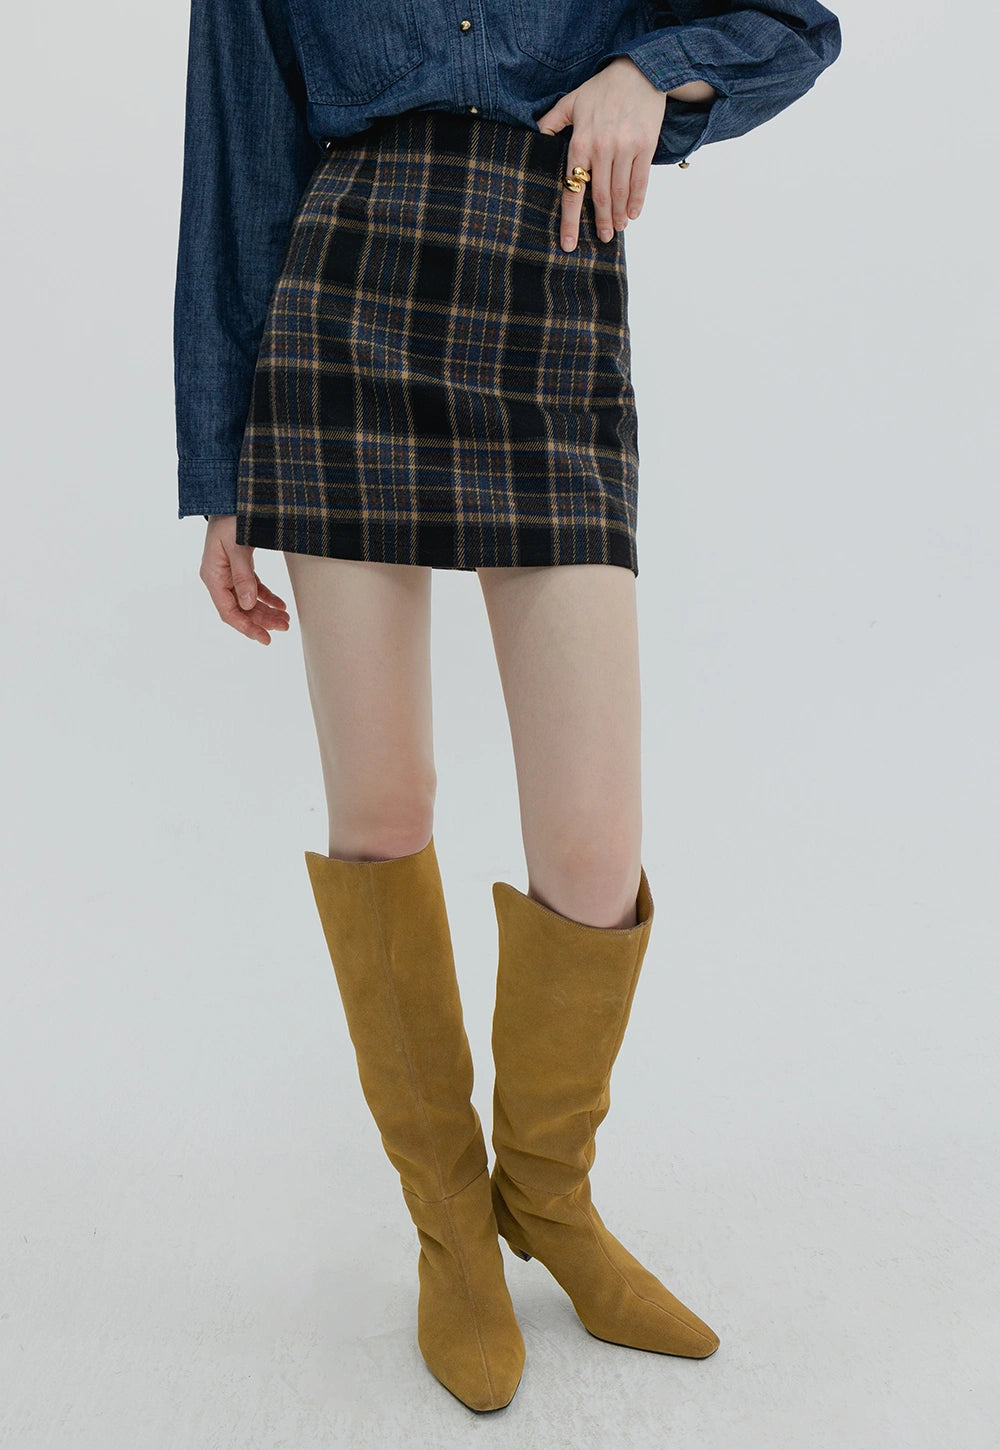 Women's Plaid A-Line Skirt - High Waist Tartan Mini Skirt